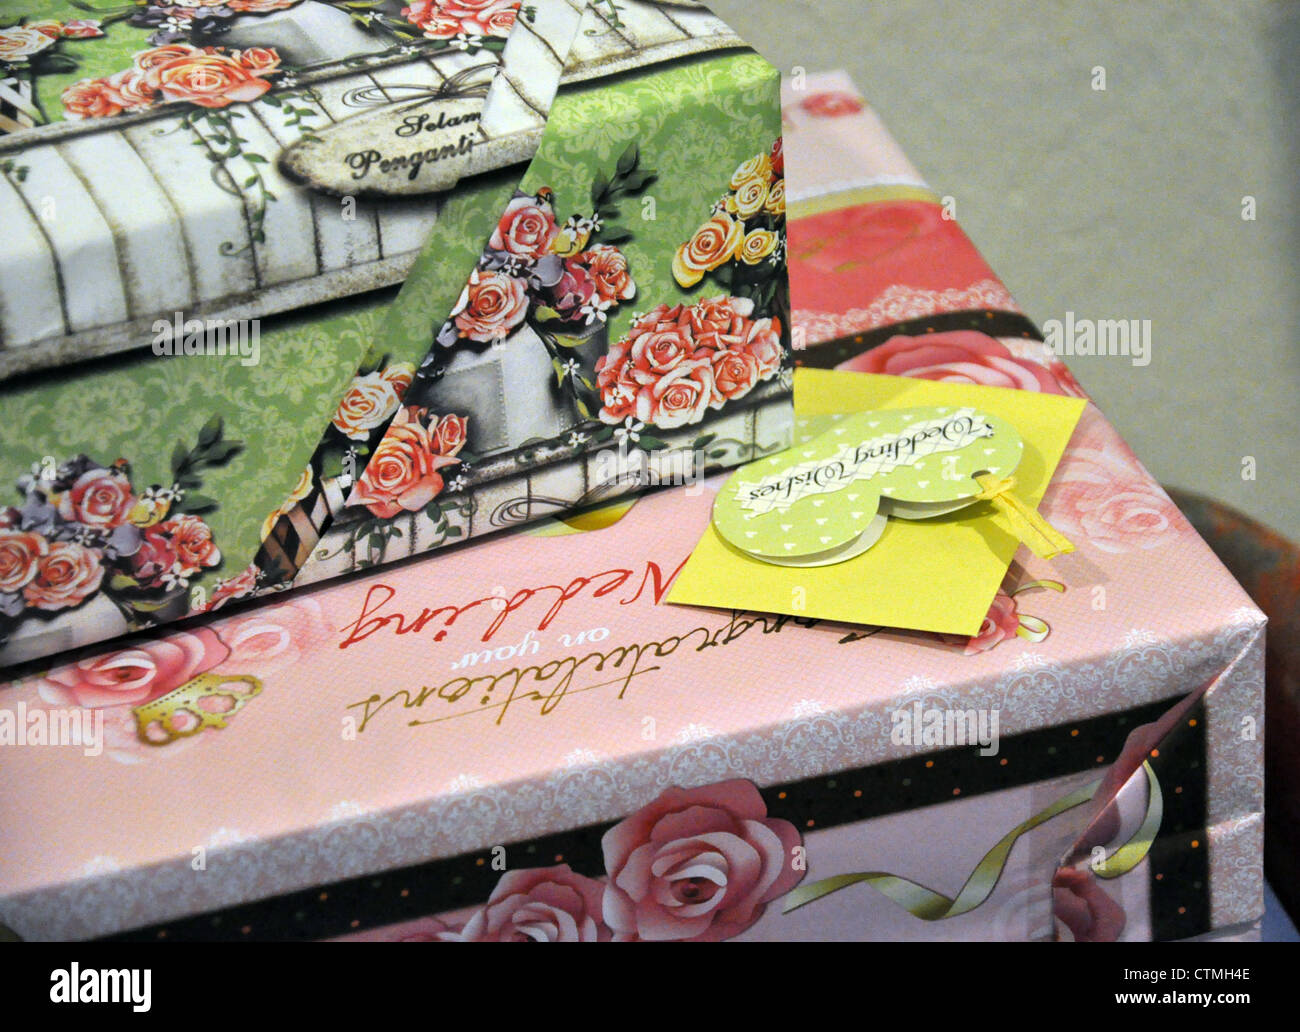 Besonderes Geschenk-Boxen für die Braut sind von seinen Kollegen am Tag  ihrer Hochzeit gegeben Stockfotografie - Alamy